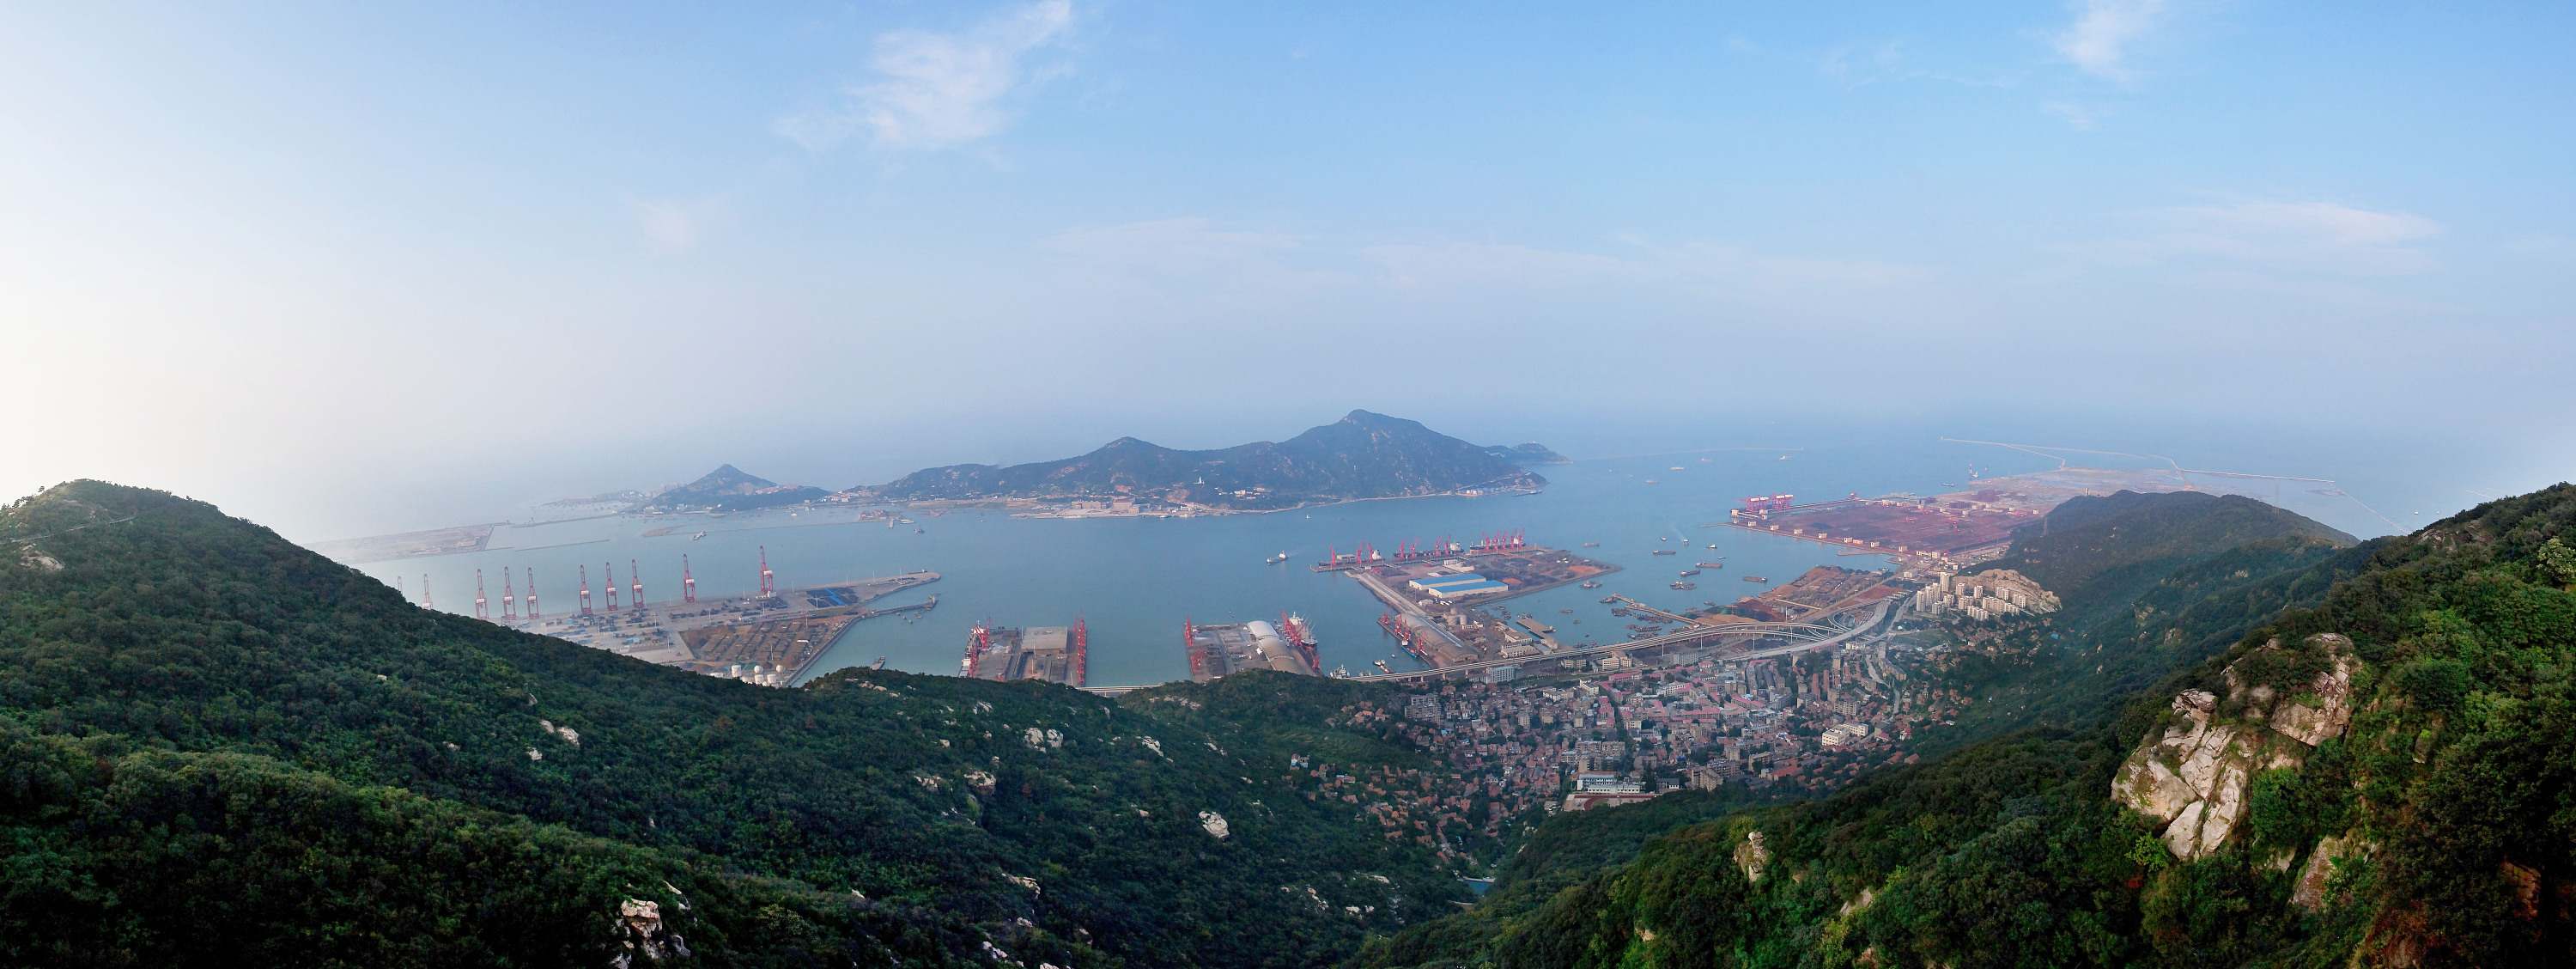 连云港港口开辟第5条国际滚装航线-中国港口网